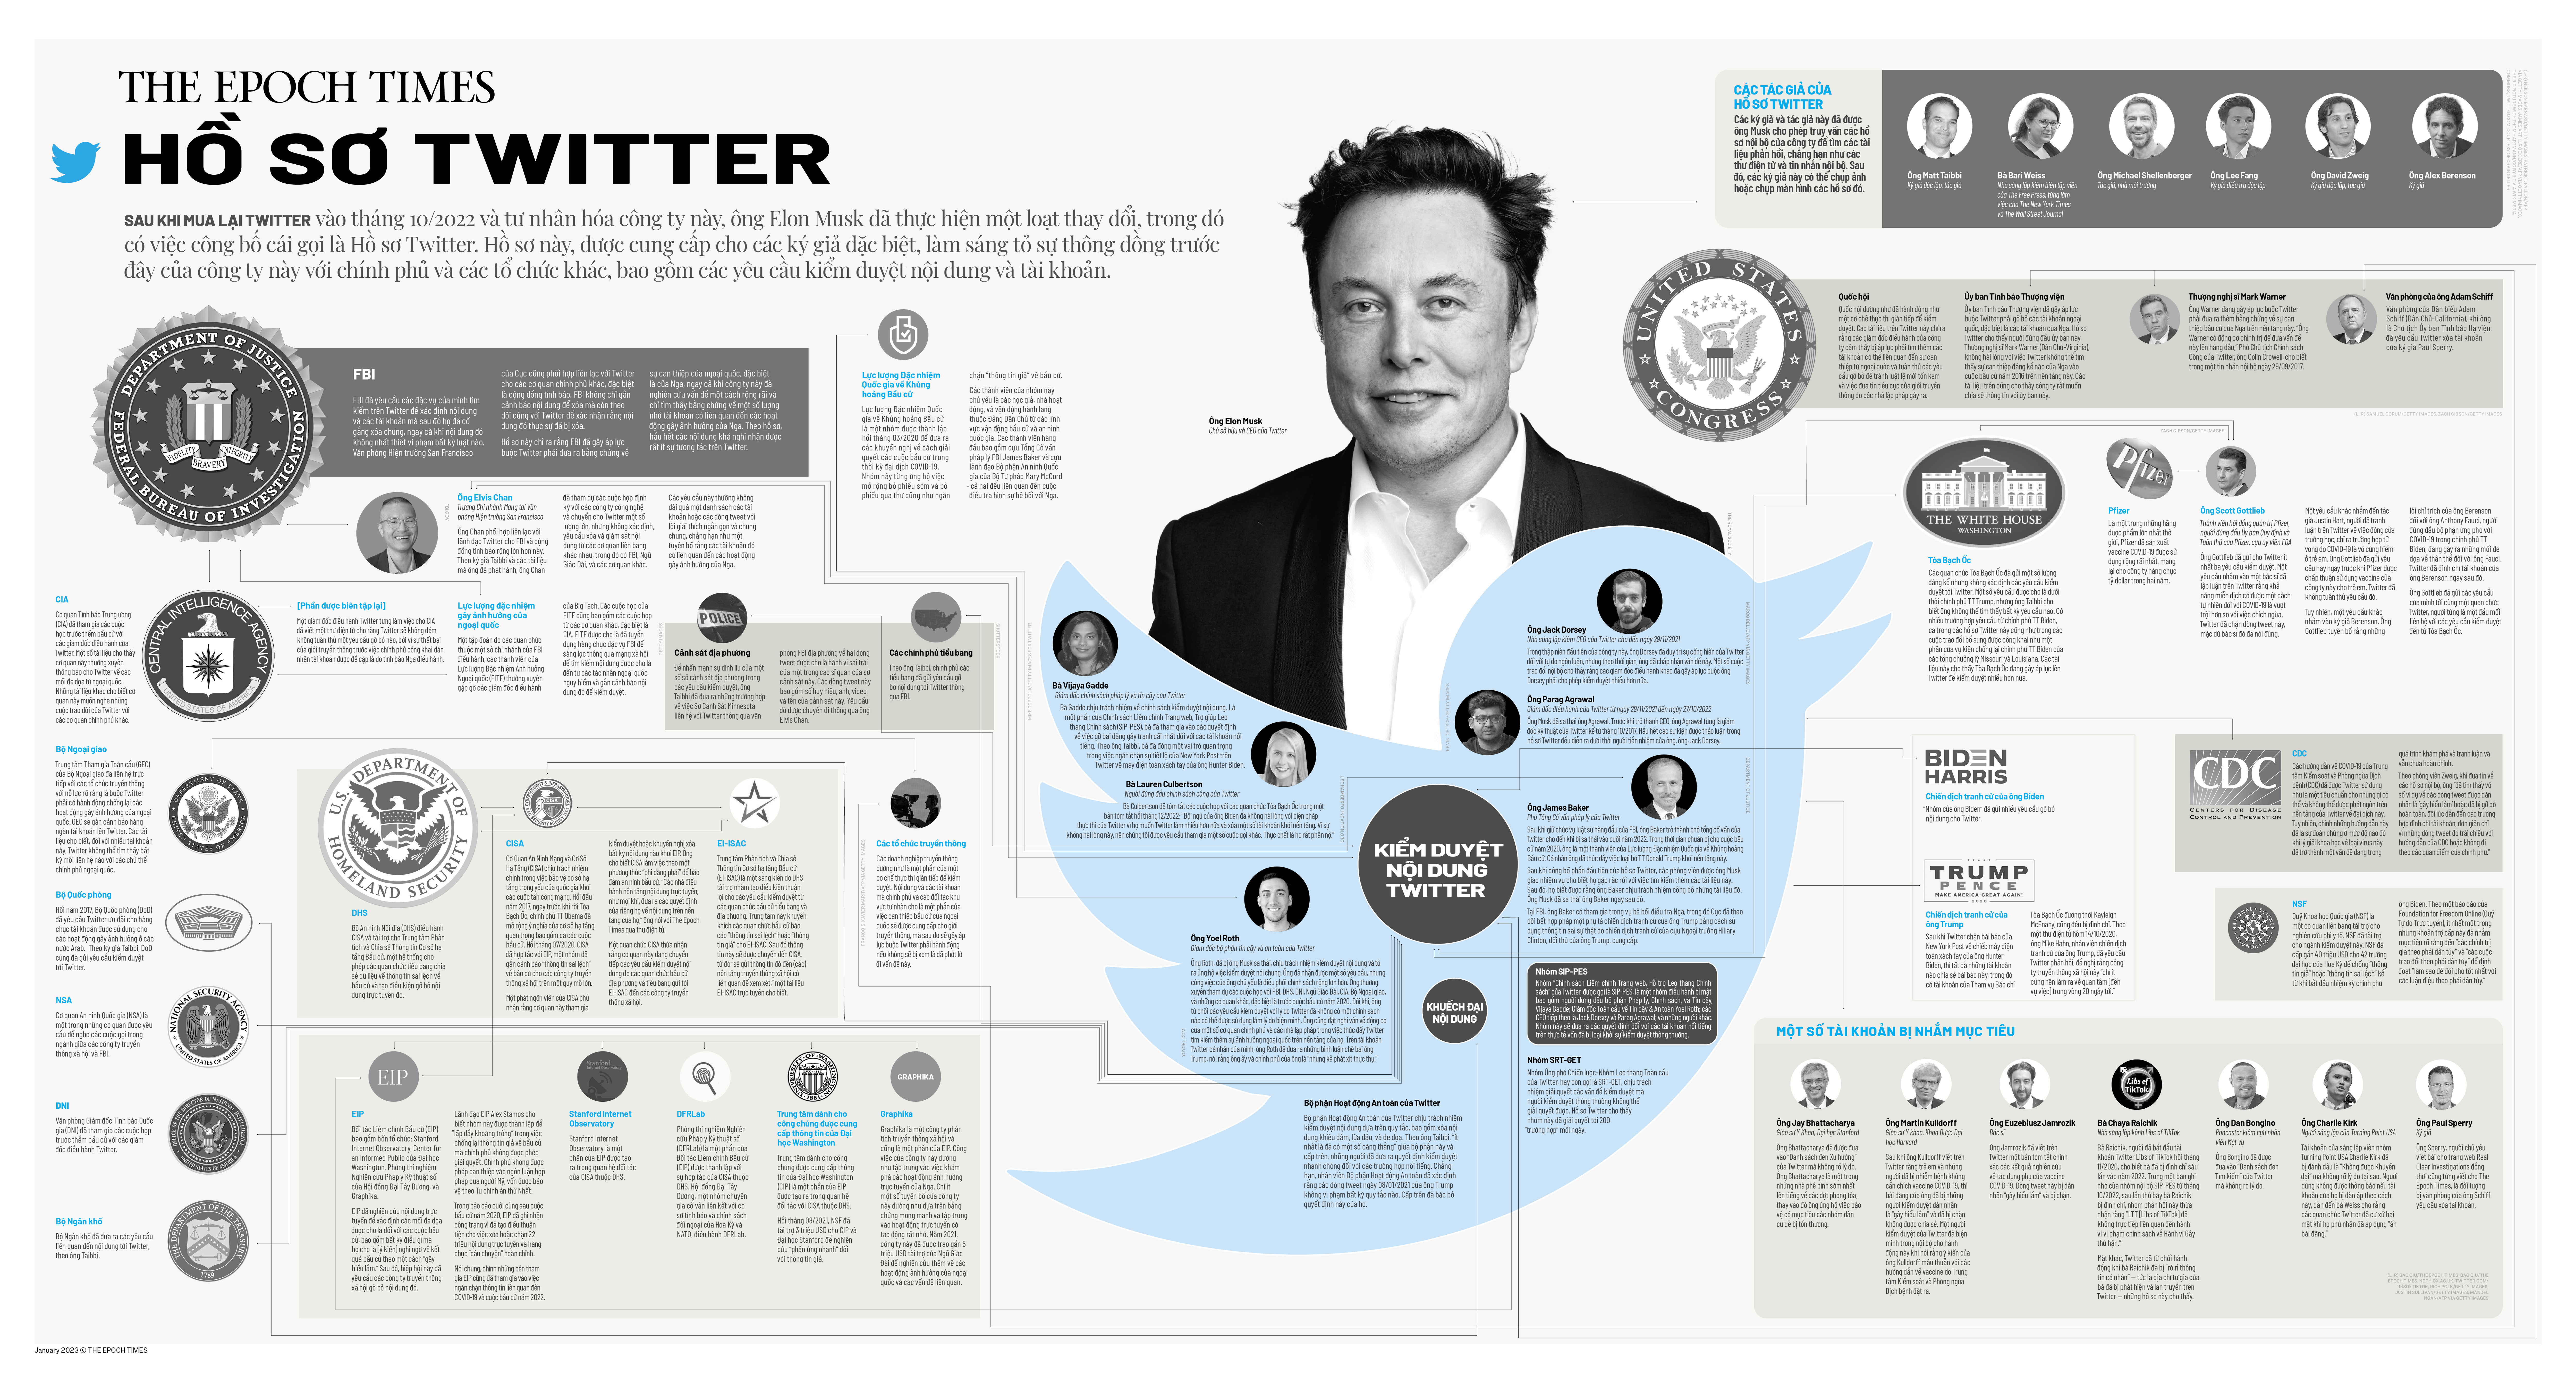 Chính trị Hoa kỳ: Những tiết lộ chính của ‘Hồ sơ Twitter’